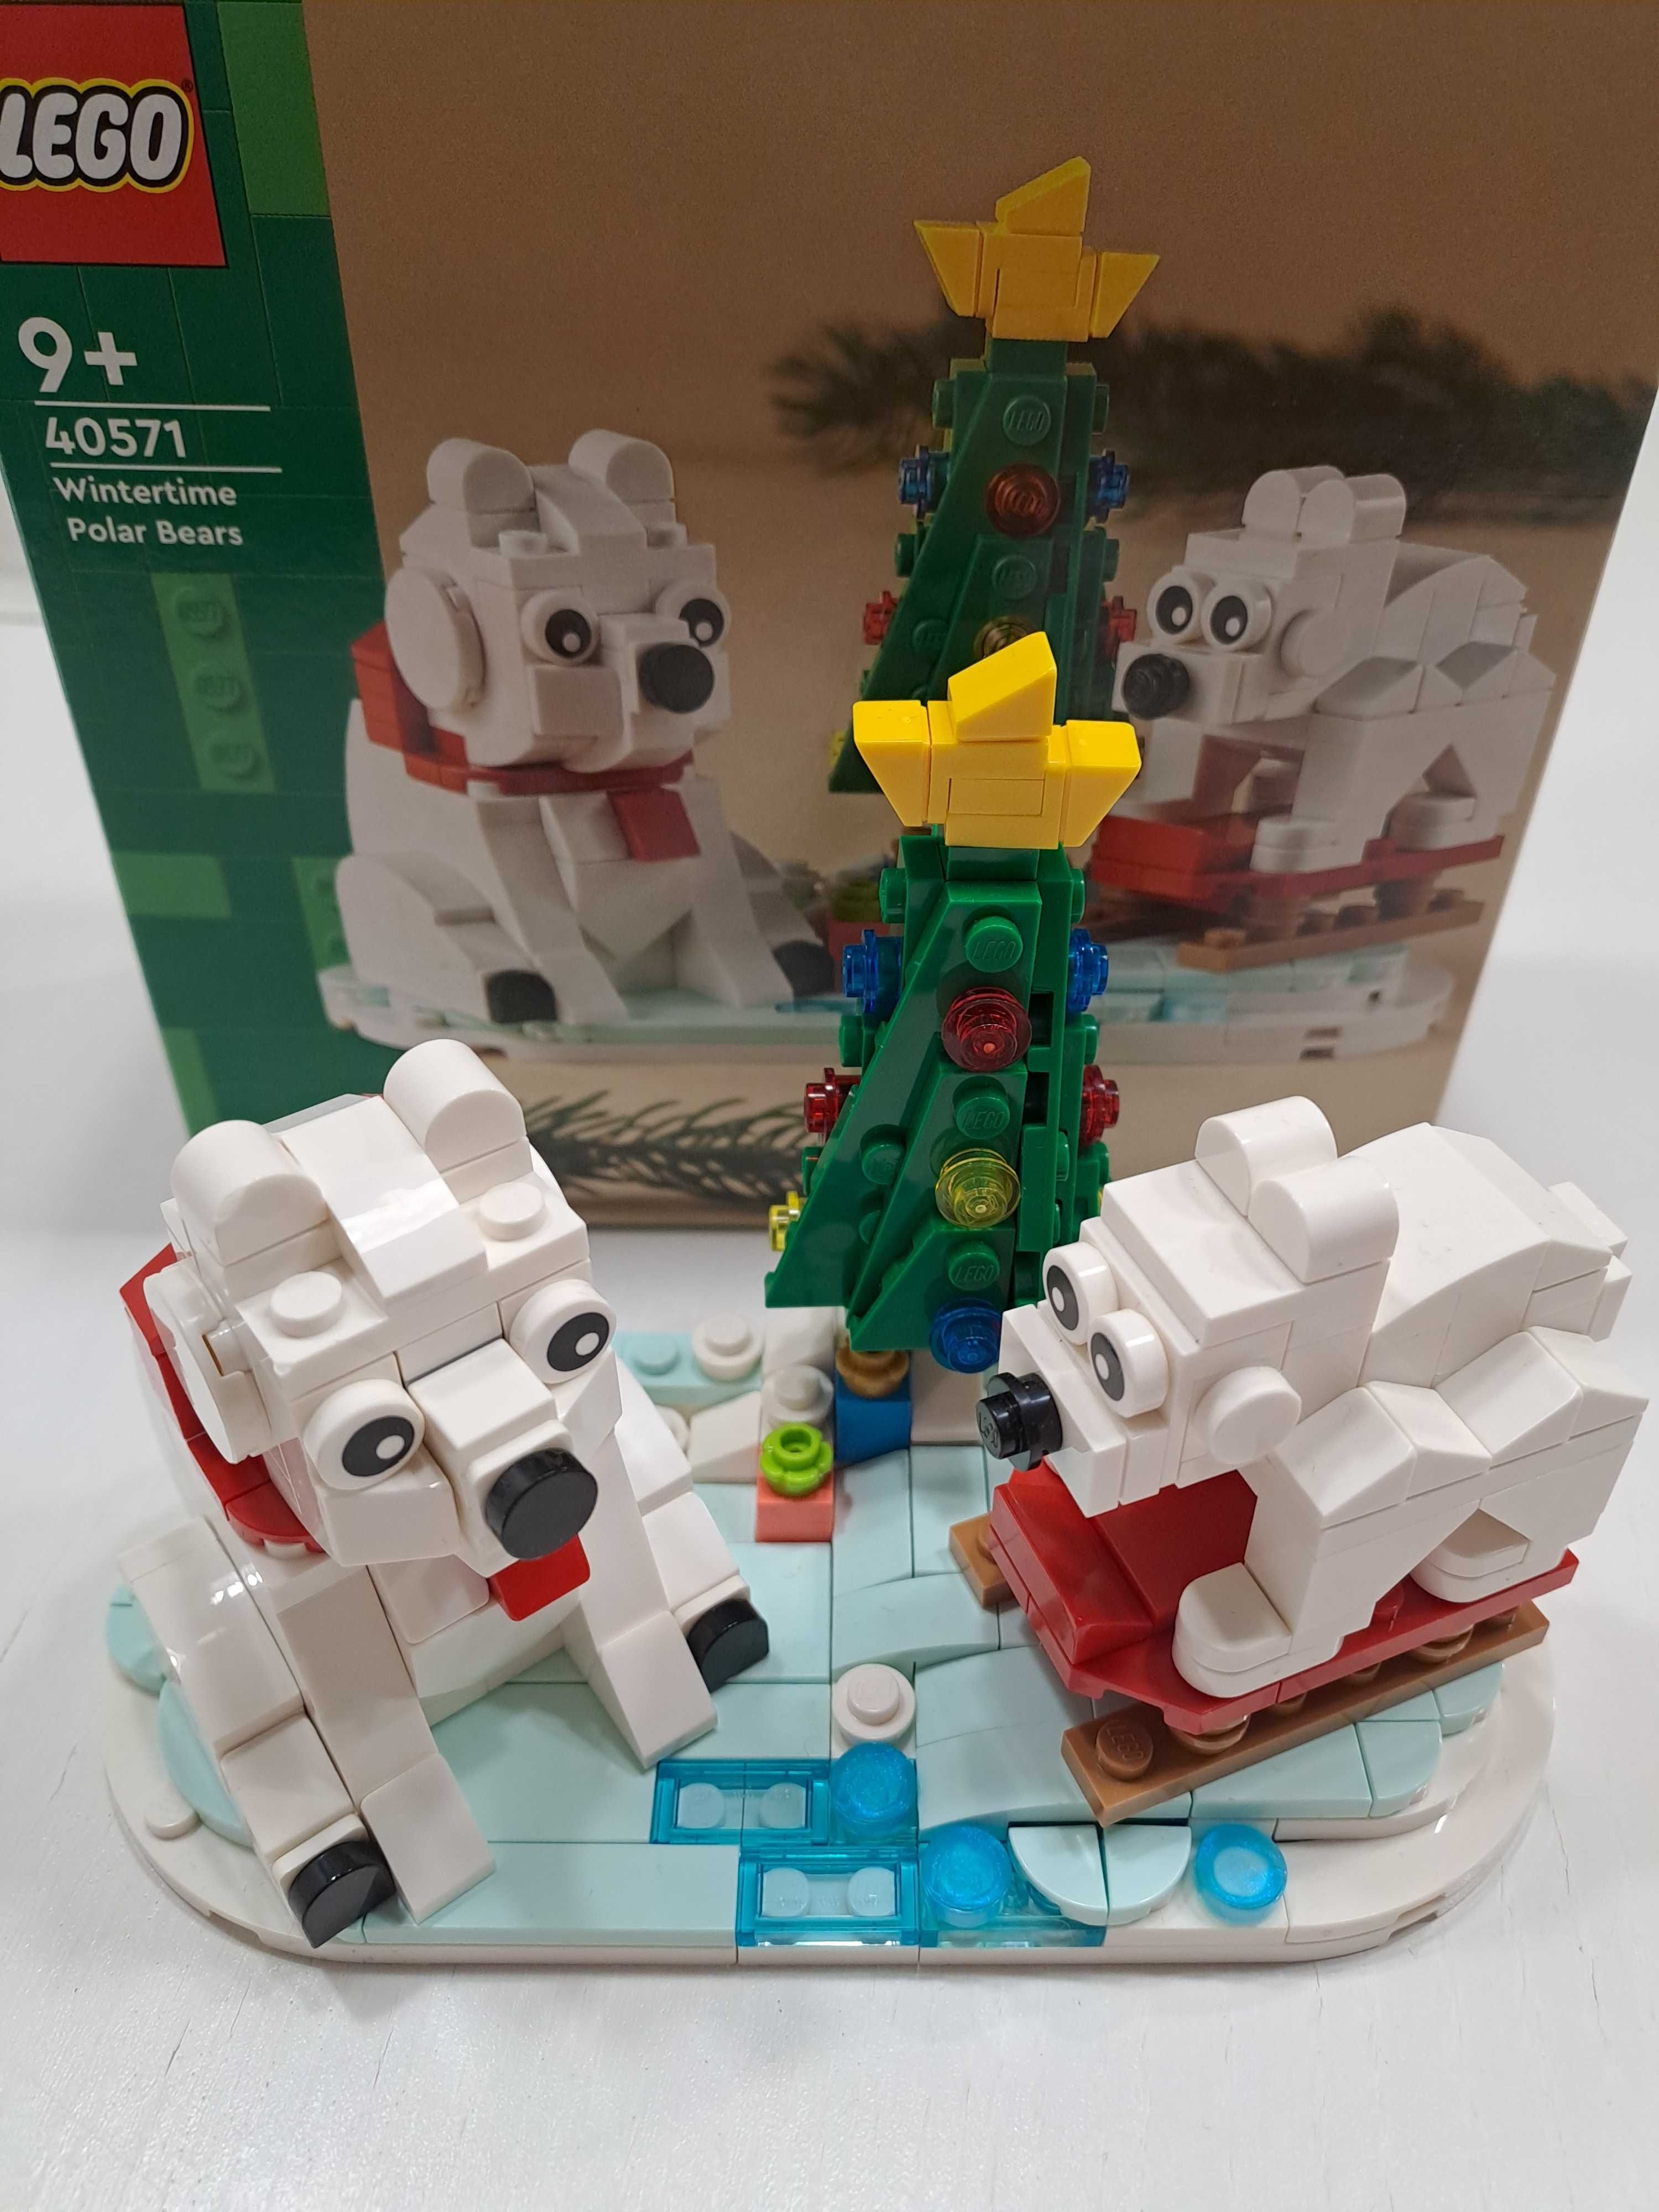 Lego 40571 zimowe niedźwiedzie polarne